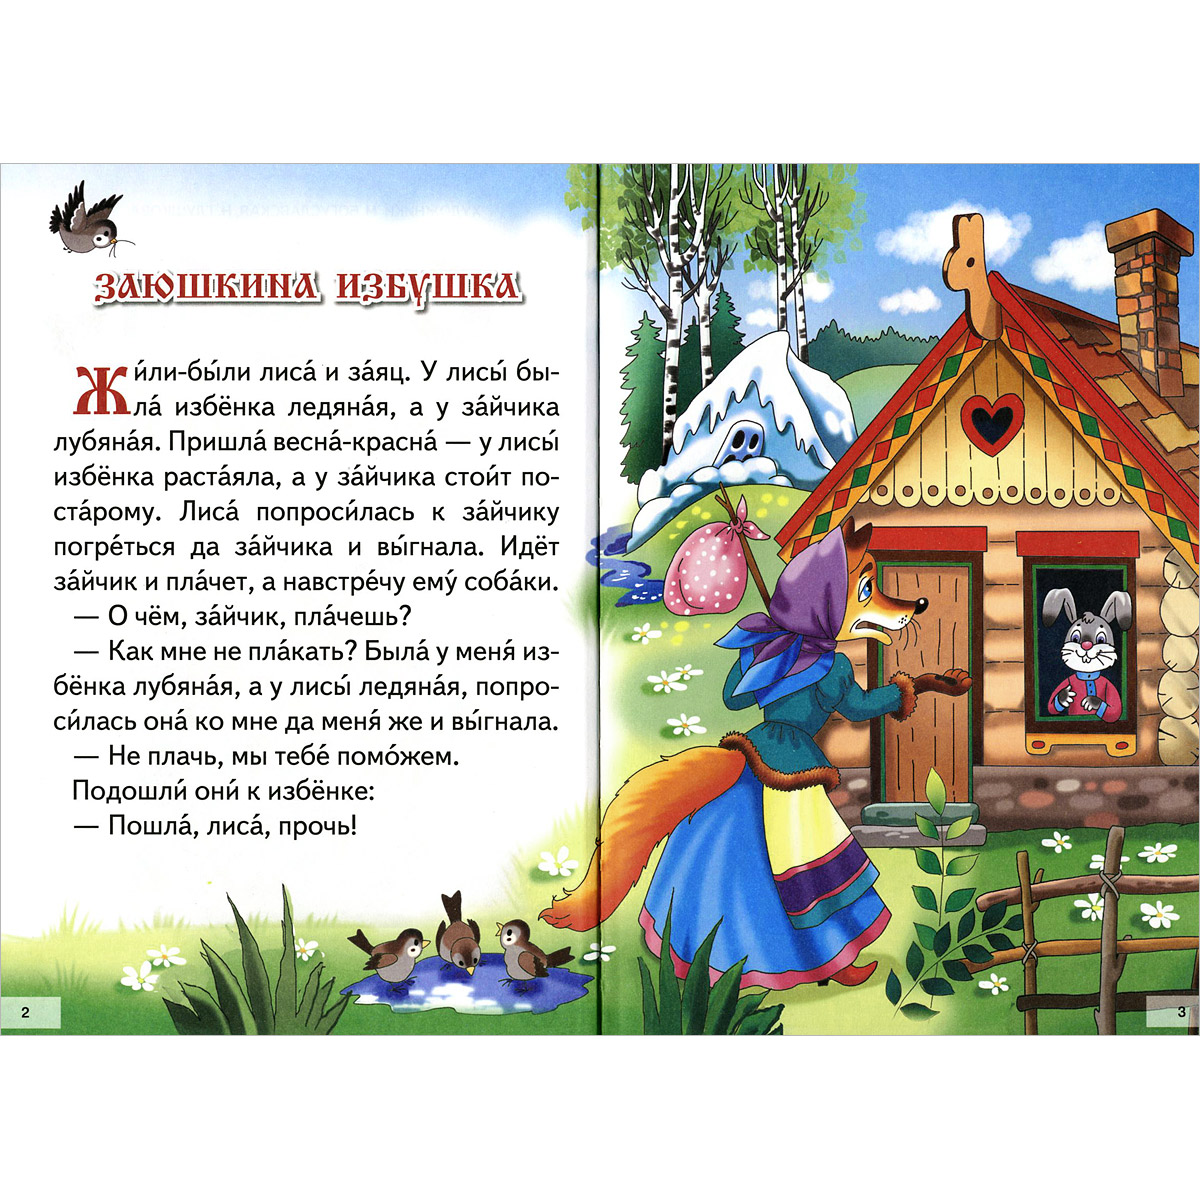 Русские народные сказки для детей. полный список